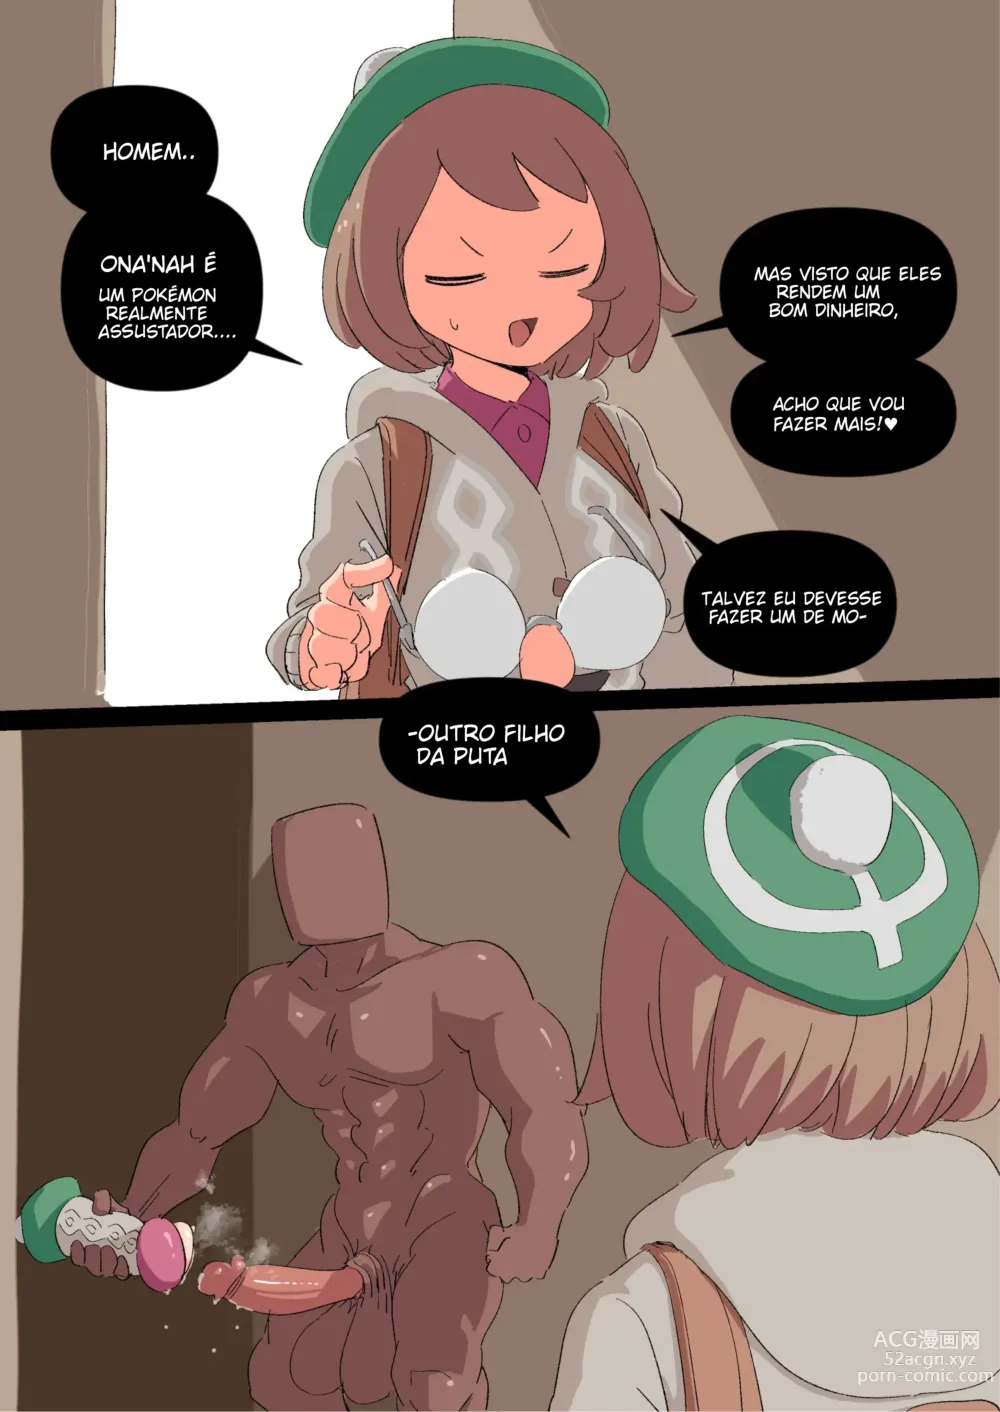 Page 15 of manga Woomochichi] Introducing! Gallars new Pokemon, Ona'nah!